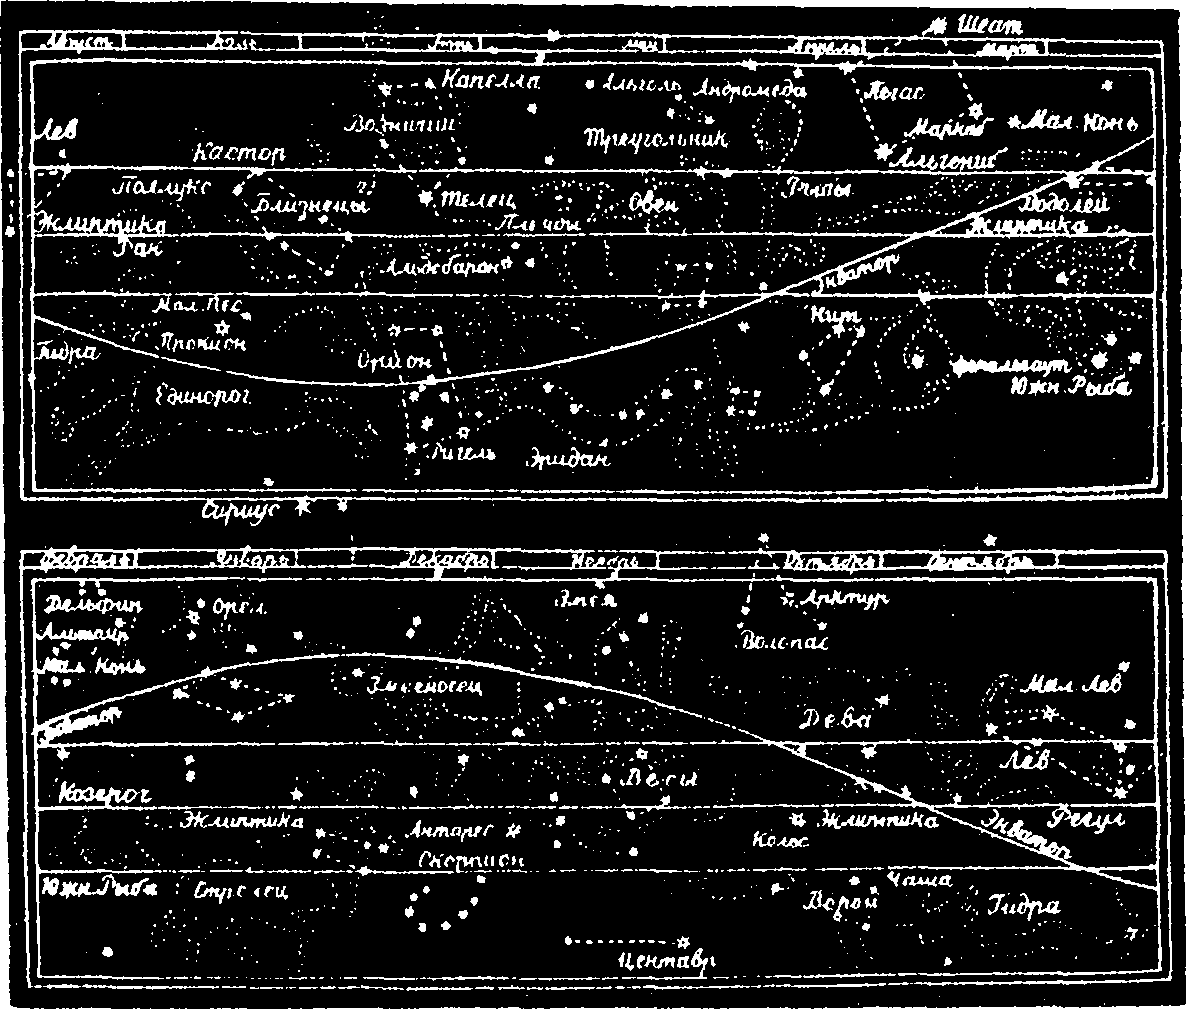 Двенадцать зодиакальных созвездий (в средней полосе рисунка), по которым совершает Солнце свой годичный кругооборот